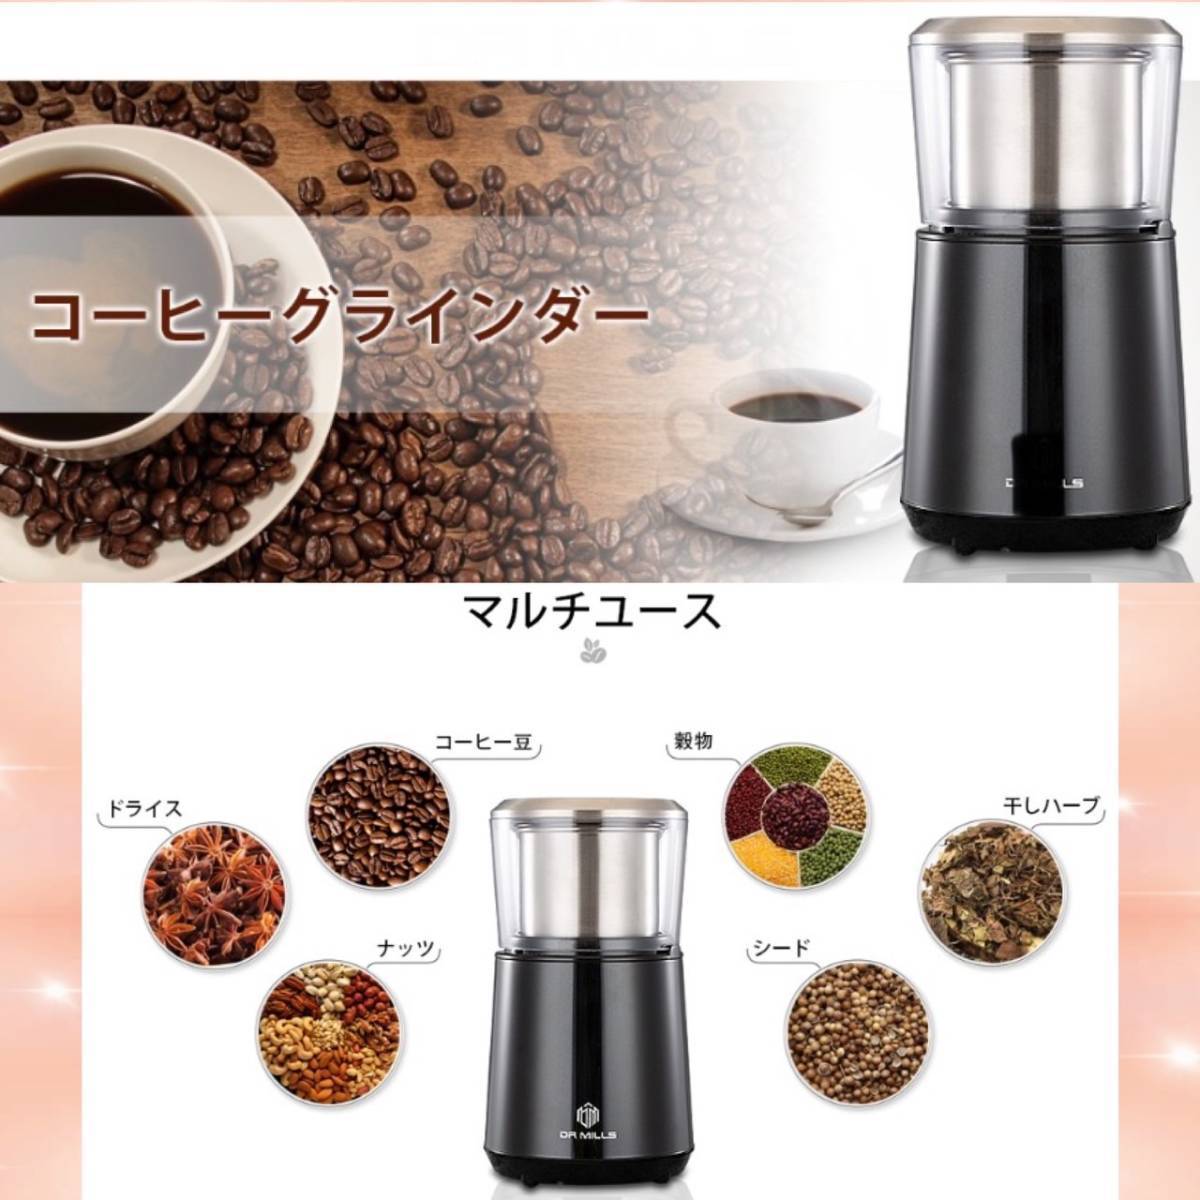 ★コーヒー豆はもちろん鰹節・オートミール・お茶も挽ける♪★コーヒーグラインダー